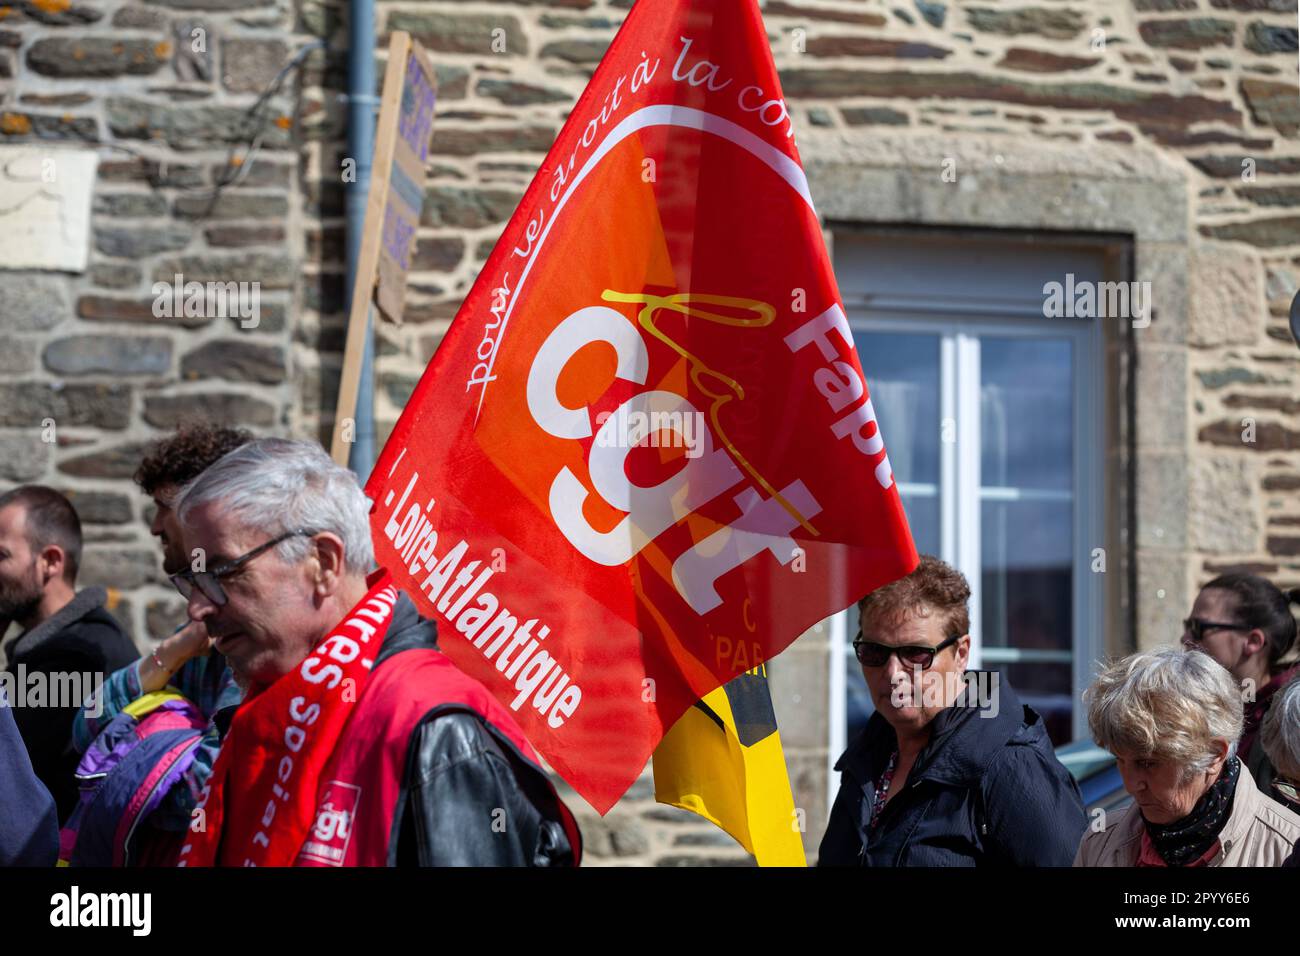 Carhaix, France - 1 mai 2023: Manifestation contre la réforme des retraites avec un démonstrateur qui agite un drapeau de la CGT, un centre syndical national. Banque D'Images